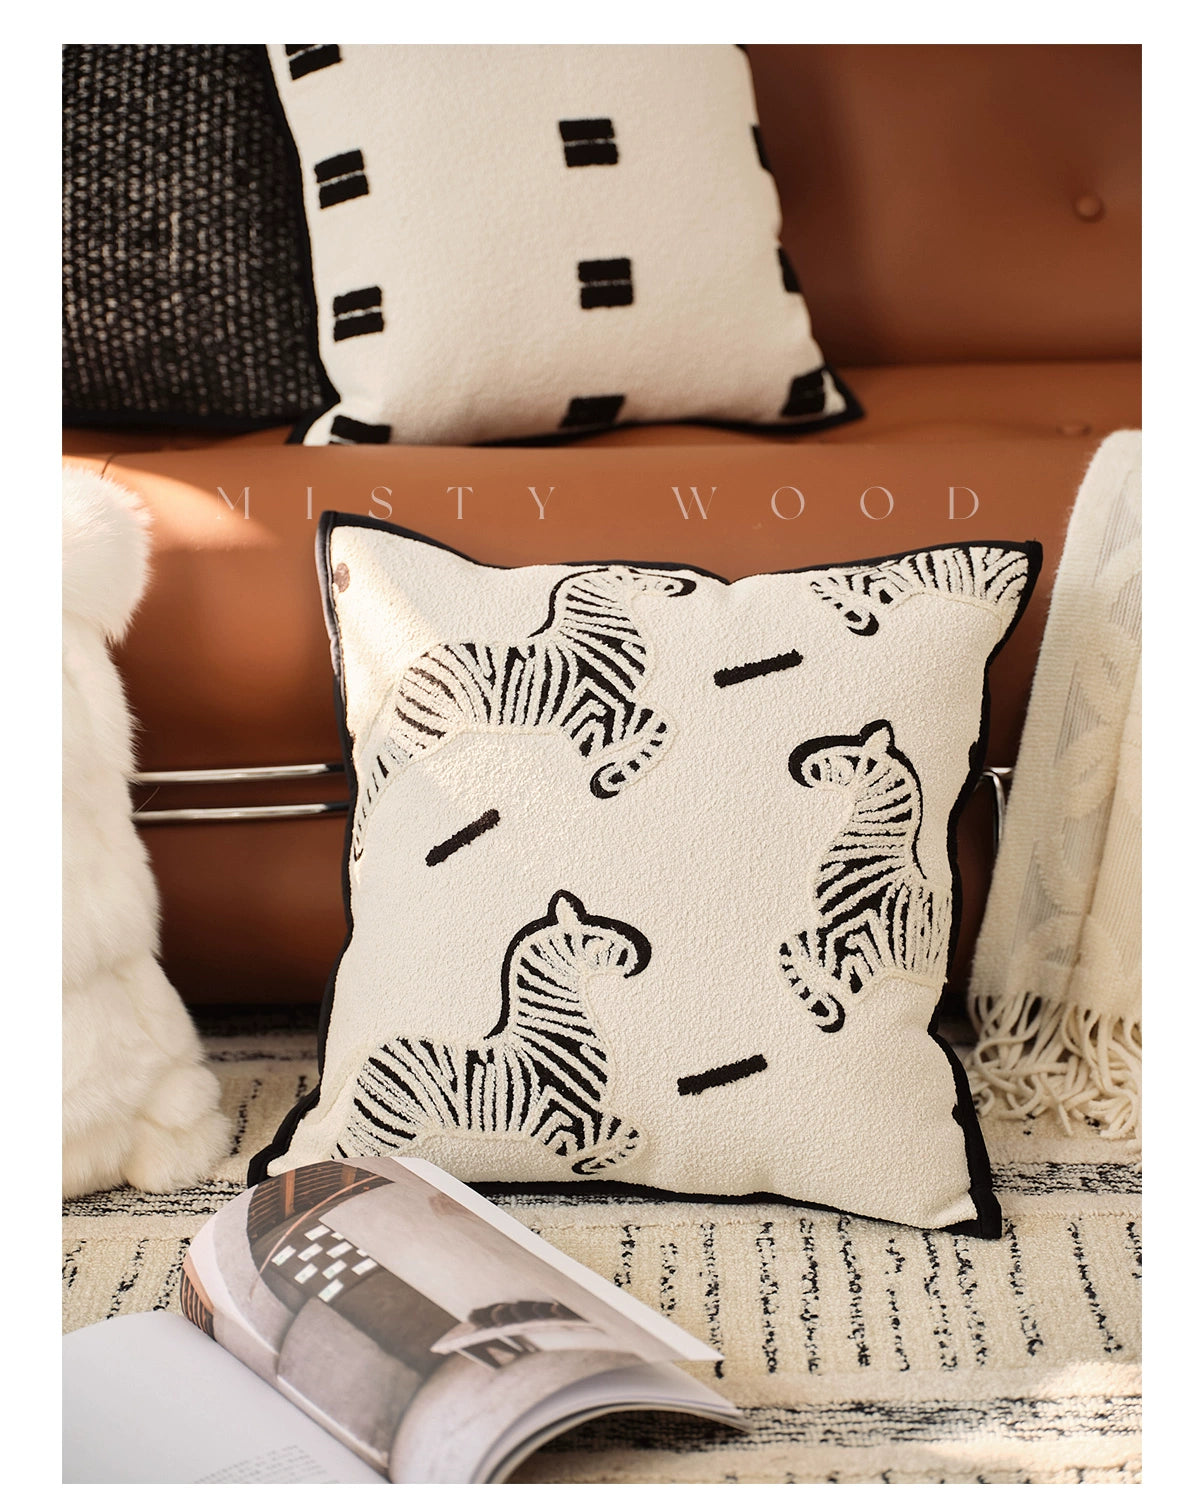 MISTYWOOD Pony Embroidered Cushion from maija